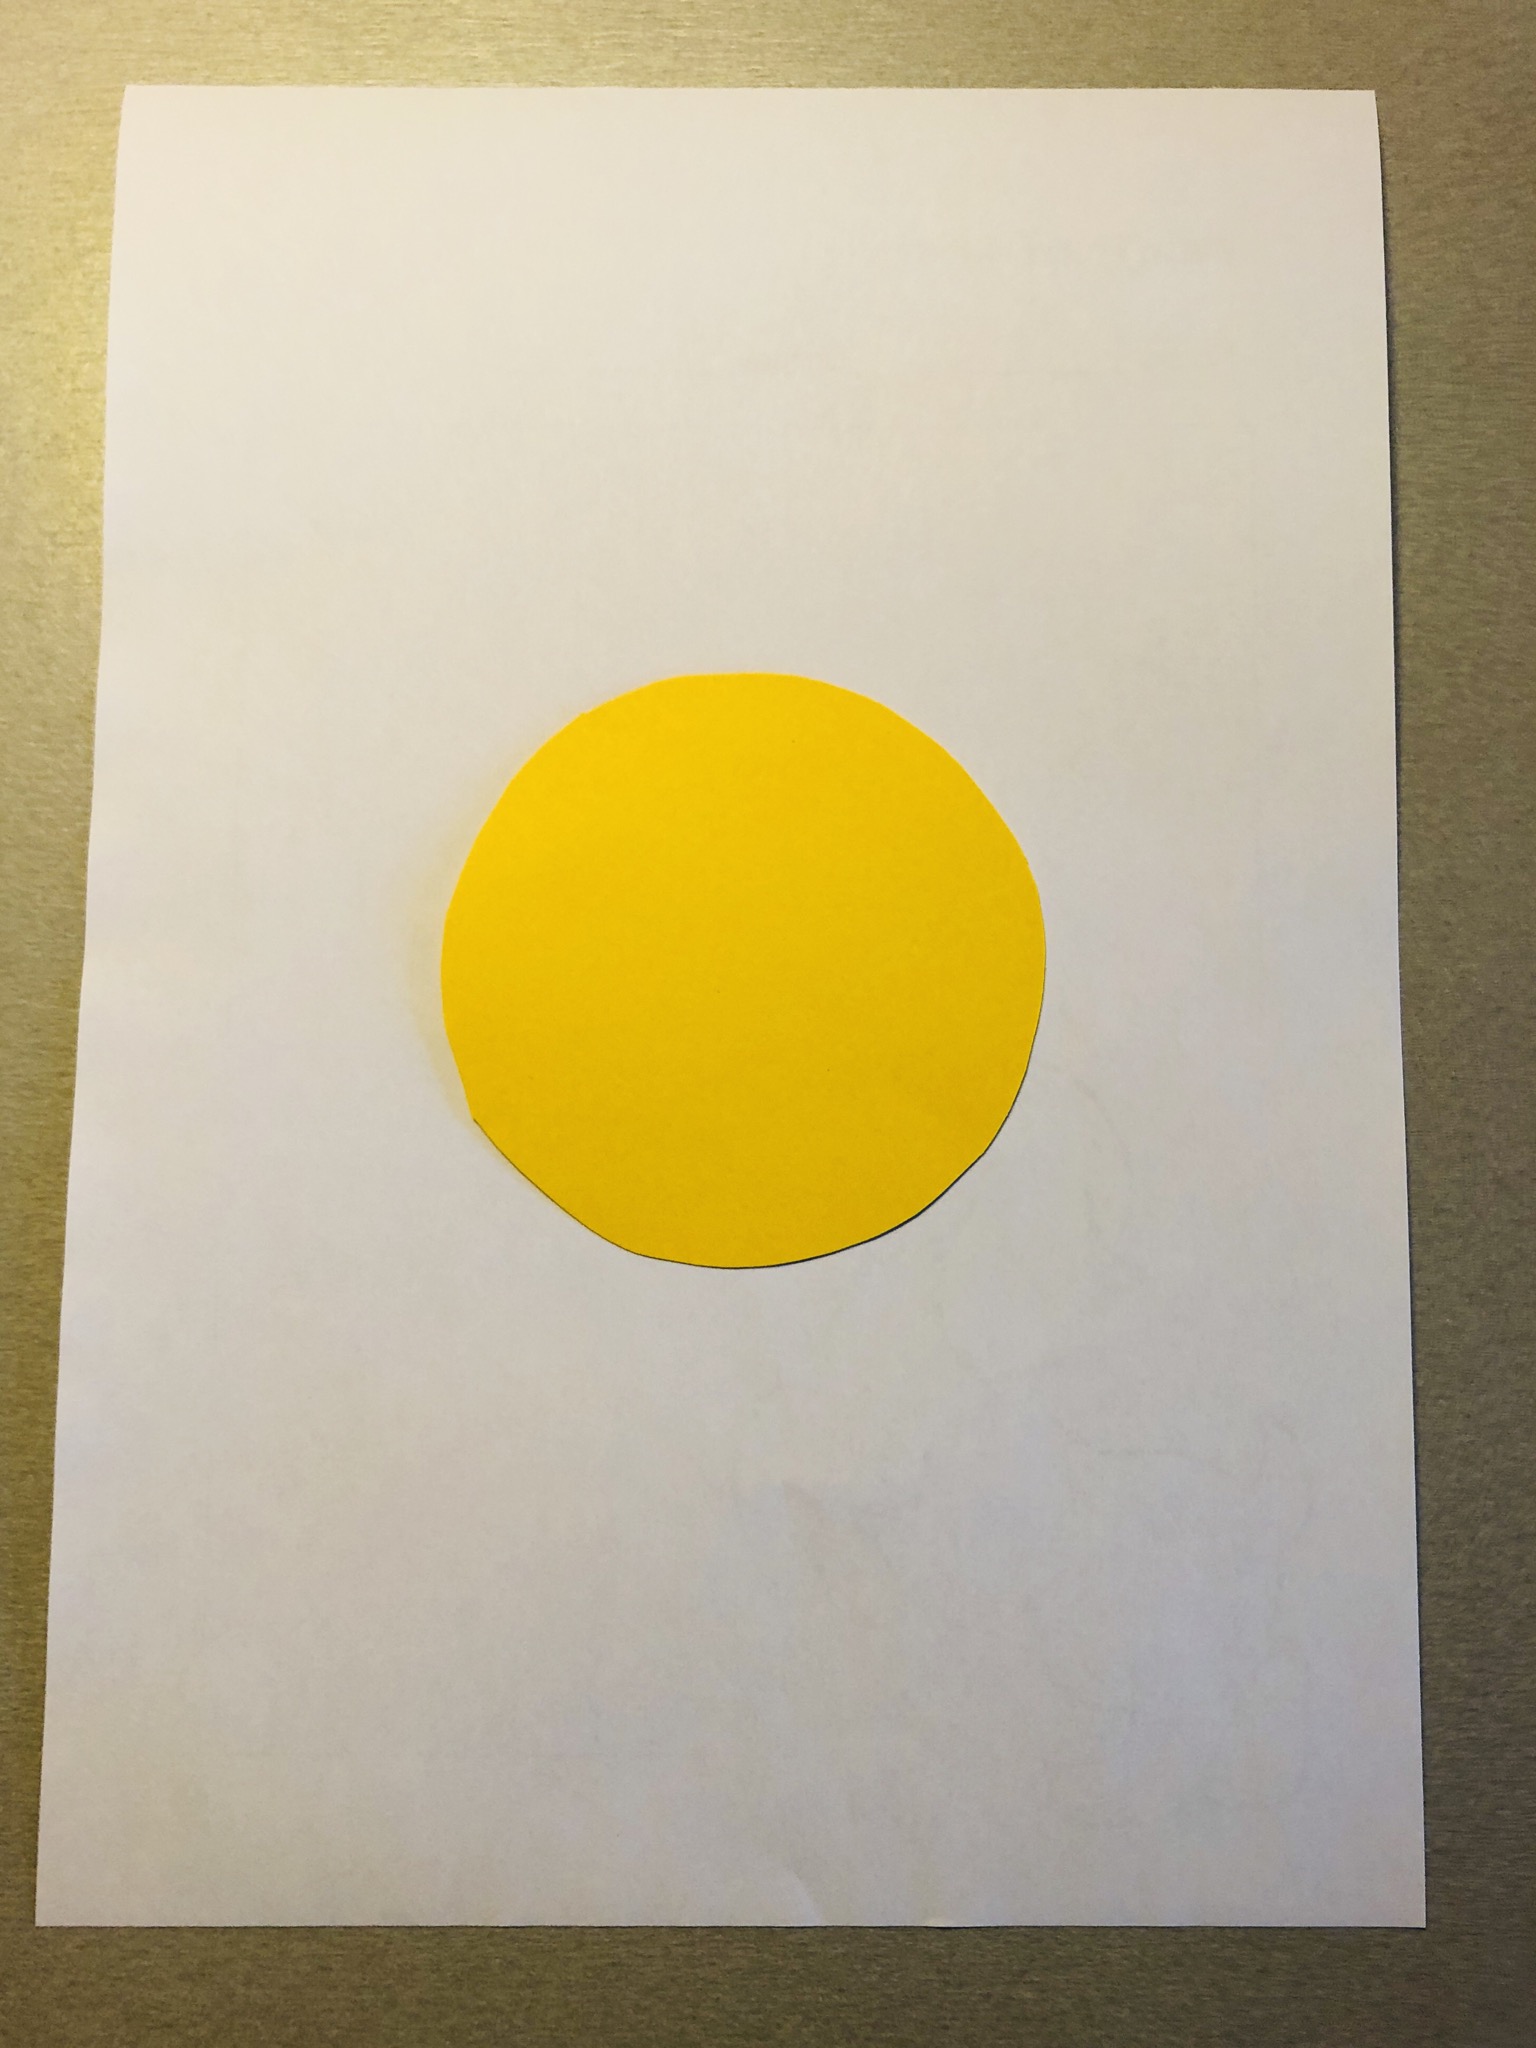 Bild zum Schritt 3 für das Bastel- und DIY-Abenteuer für Kinder: 'Legt den gelben Tonpapier-Kreis auf das weiße DIN A4 Blatt.'